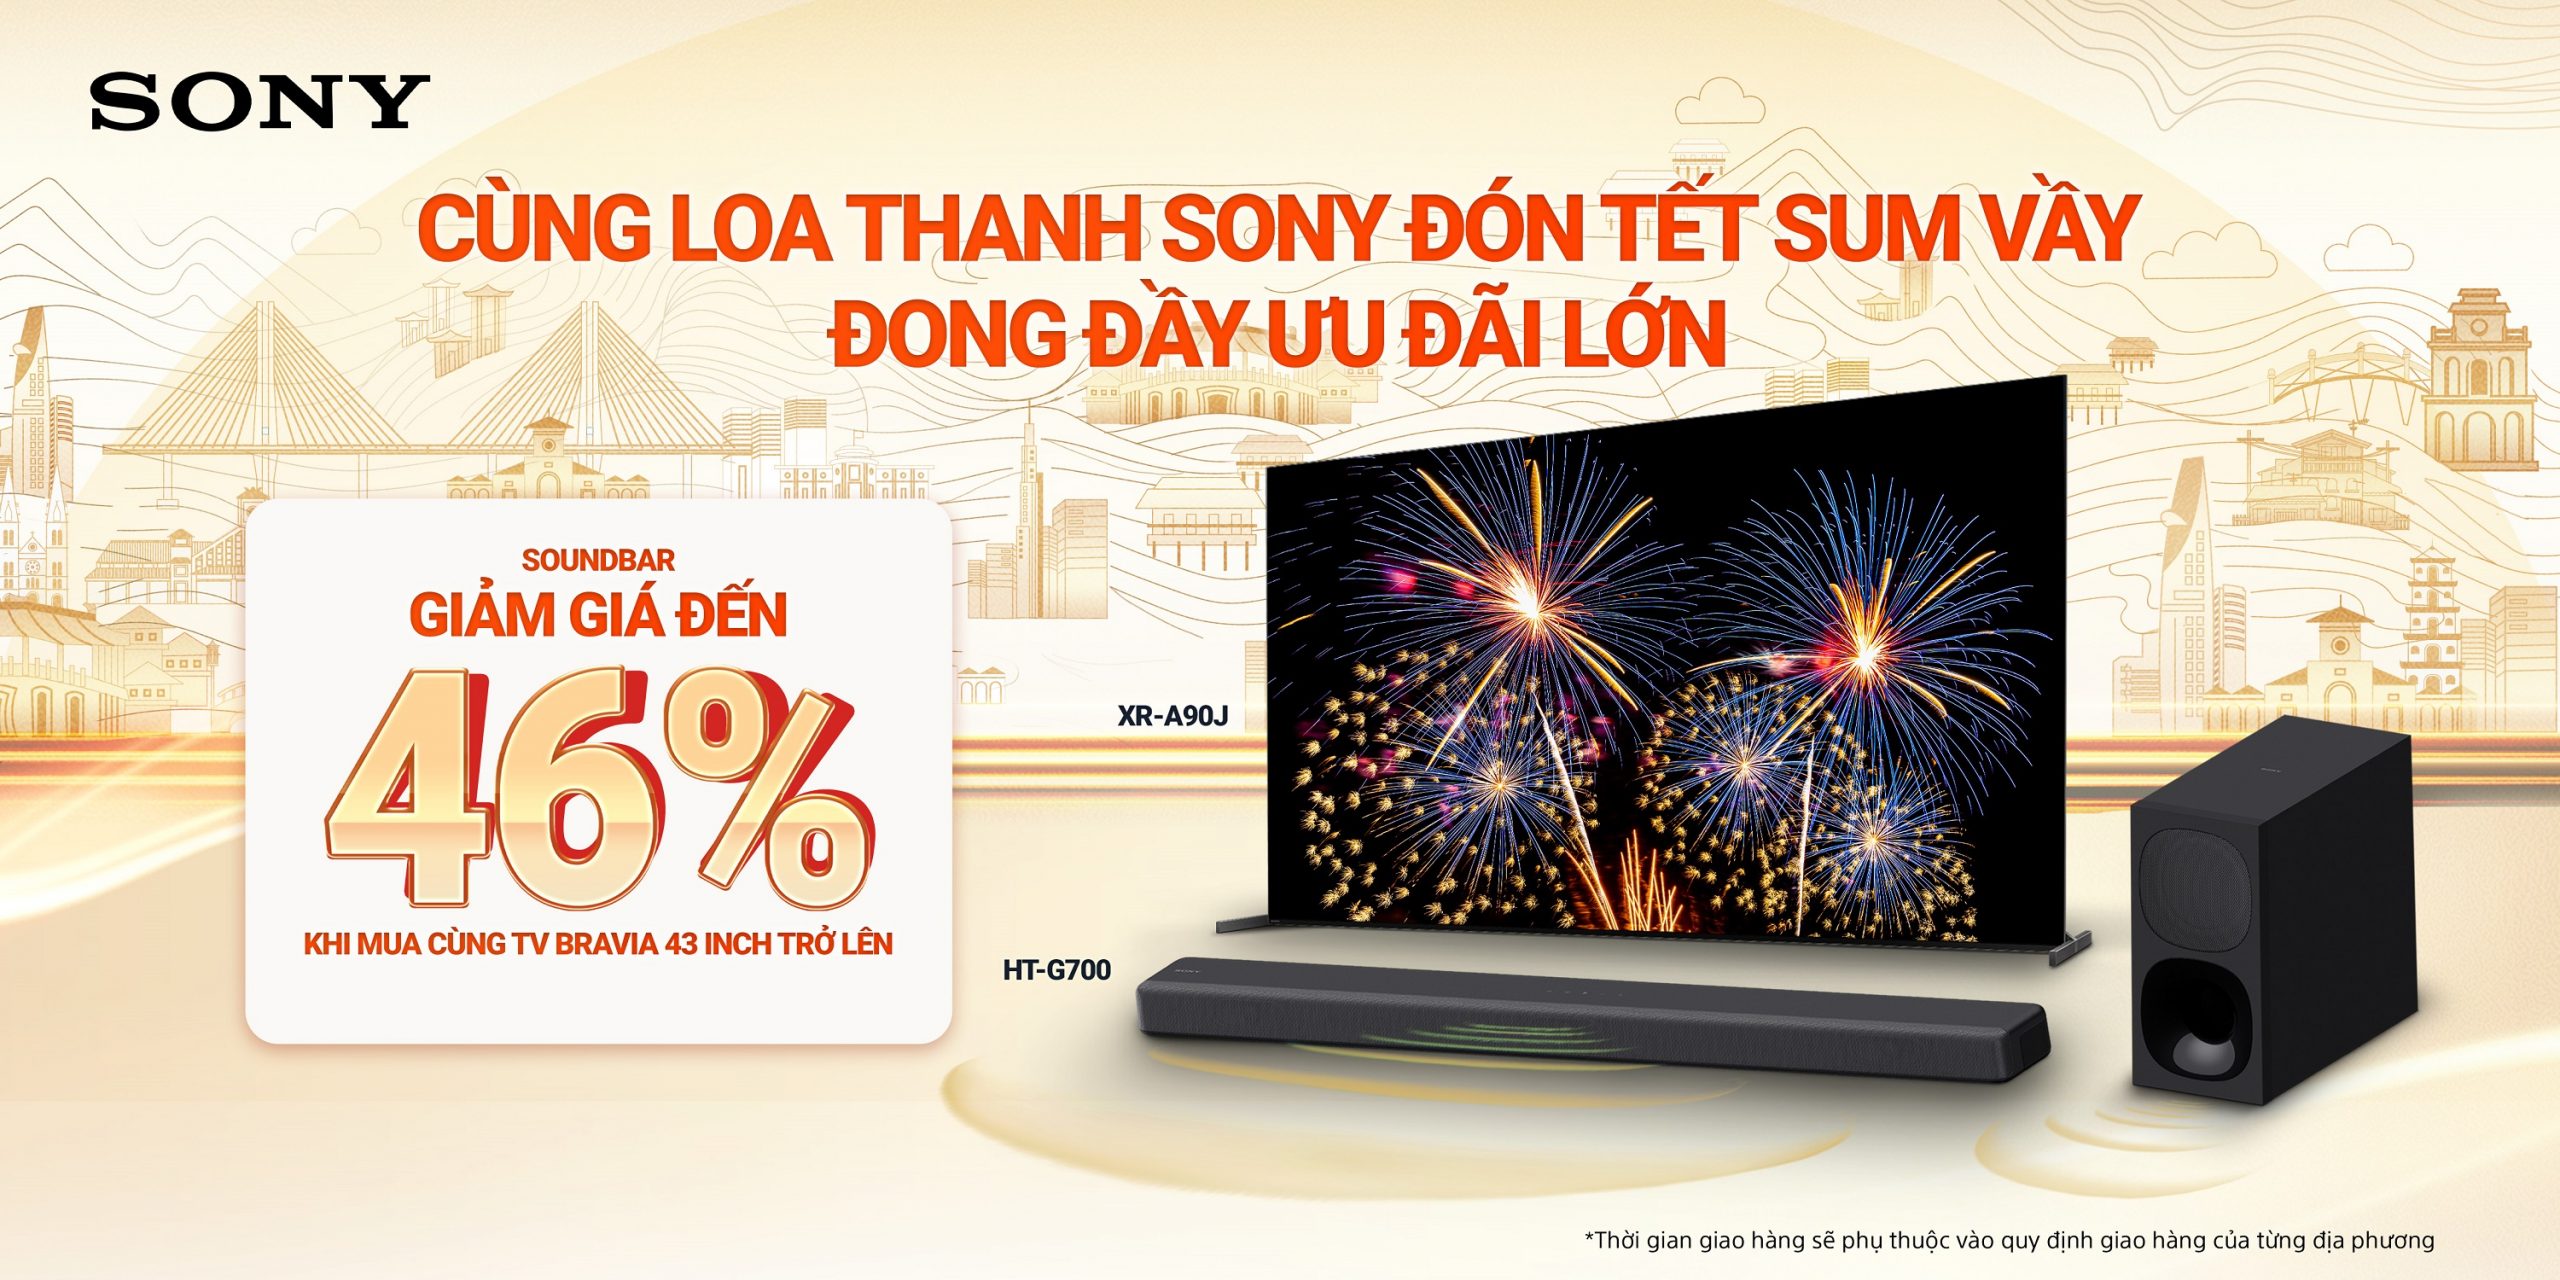 Sony Việt Nam triển khai chương trình khuyến mãi cuối năm: Tết sum vầy cùng Sony - Đong đầy ưu đãi lớn